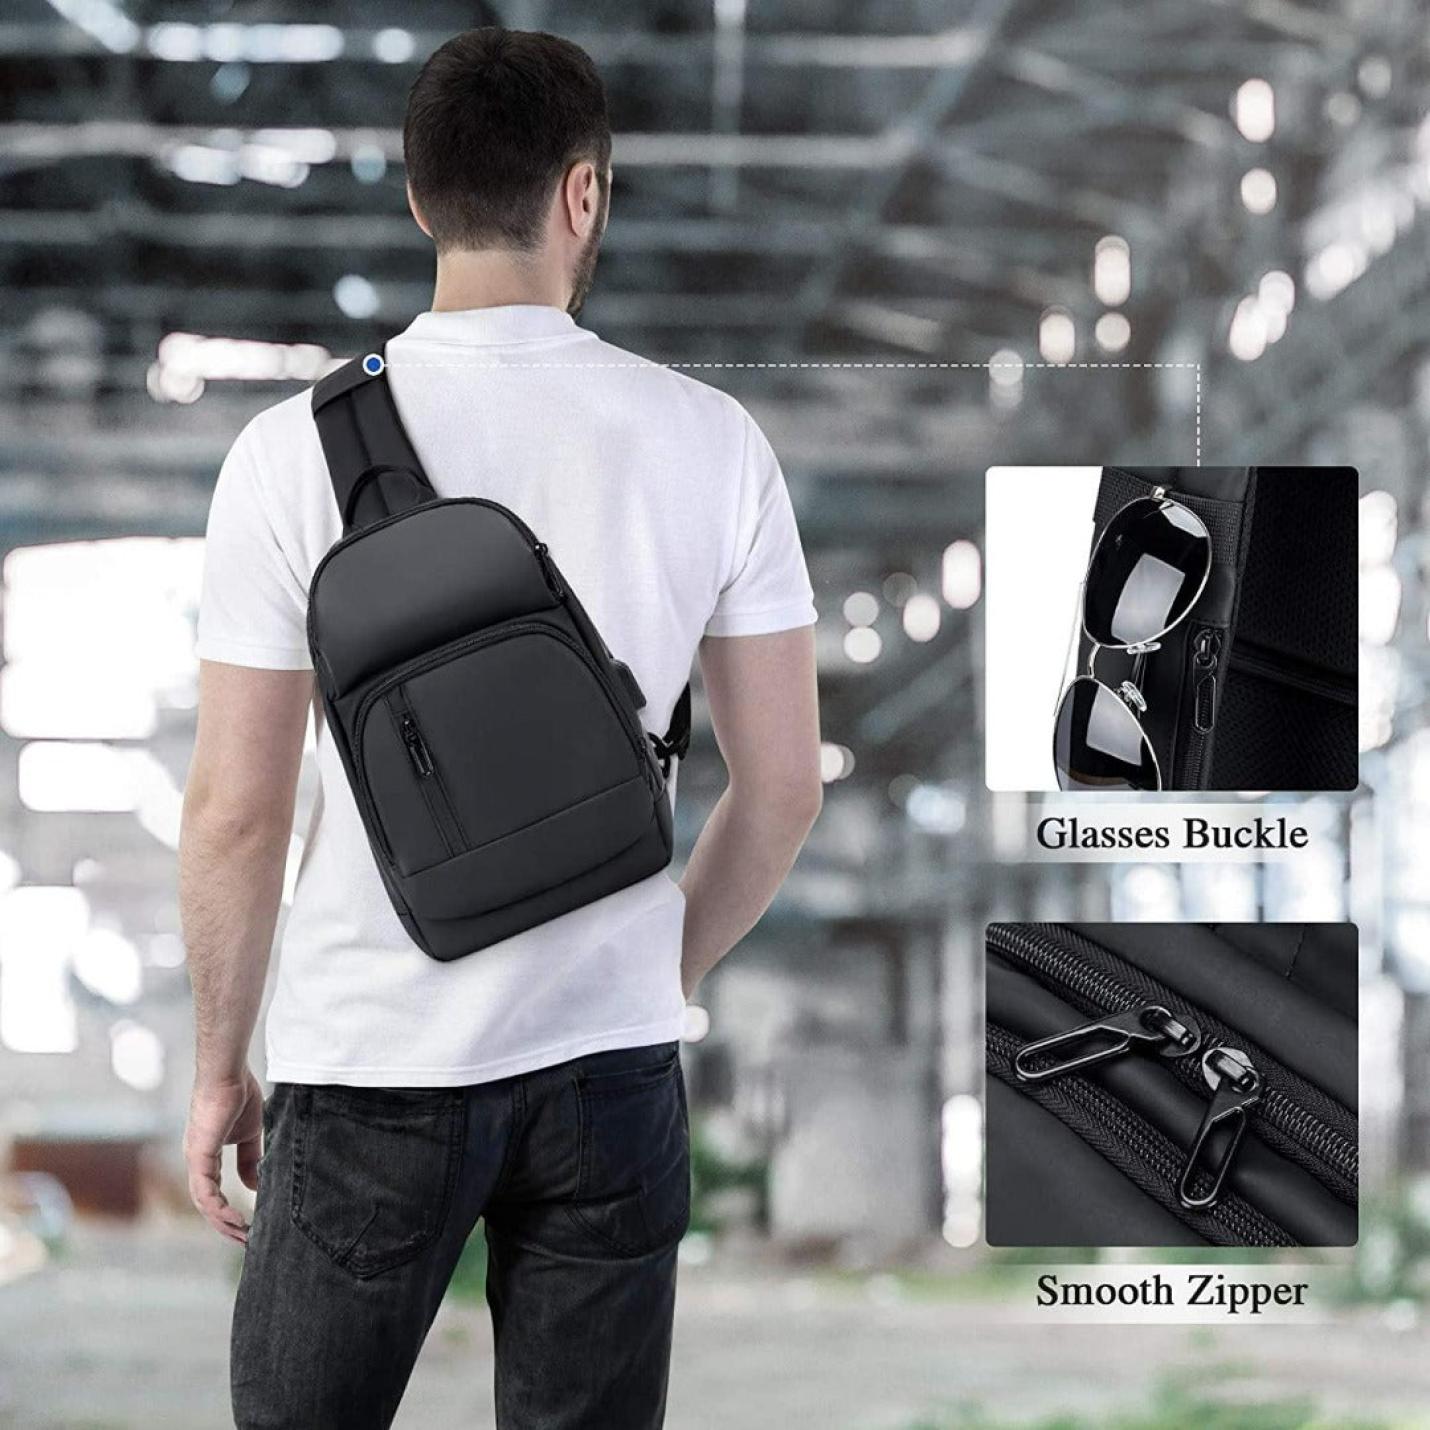 Compacte borst sling bag - comfortabel en gemakkelijk mee te nemen